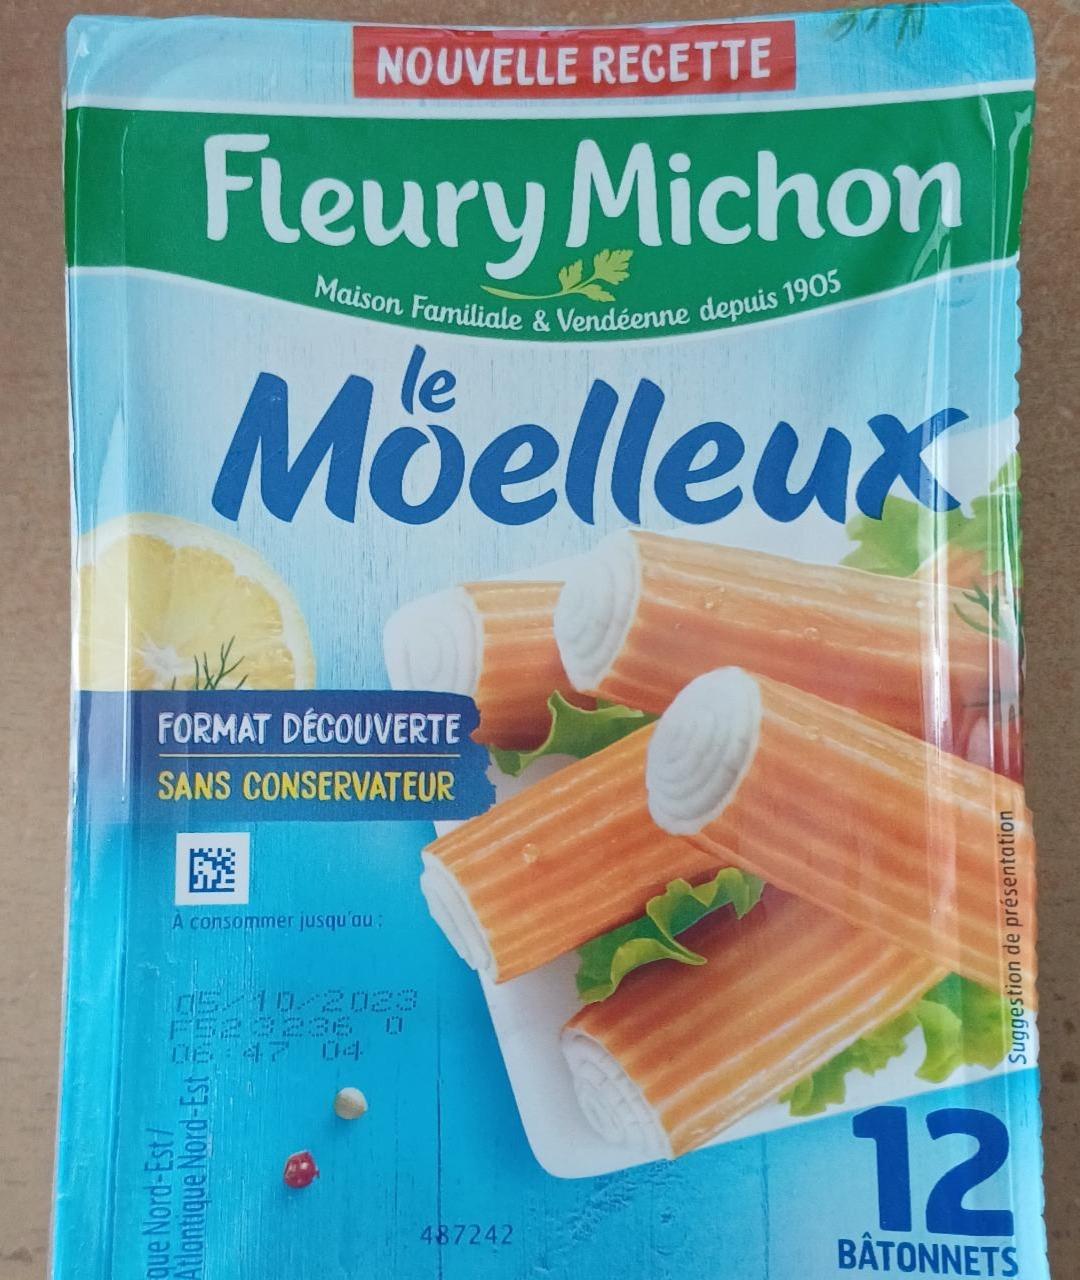 Фото - Крабовые палочки Le Moelleux Fleury Michon